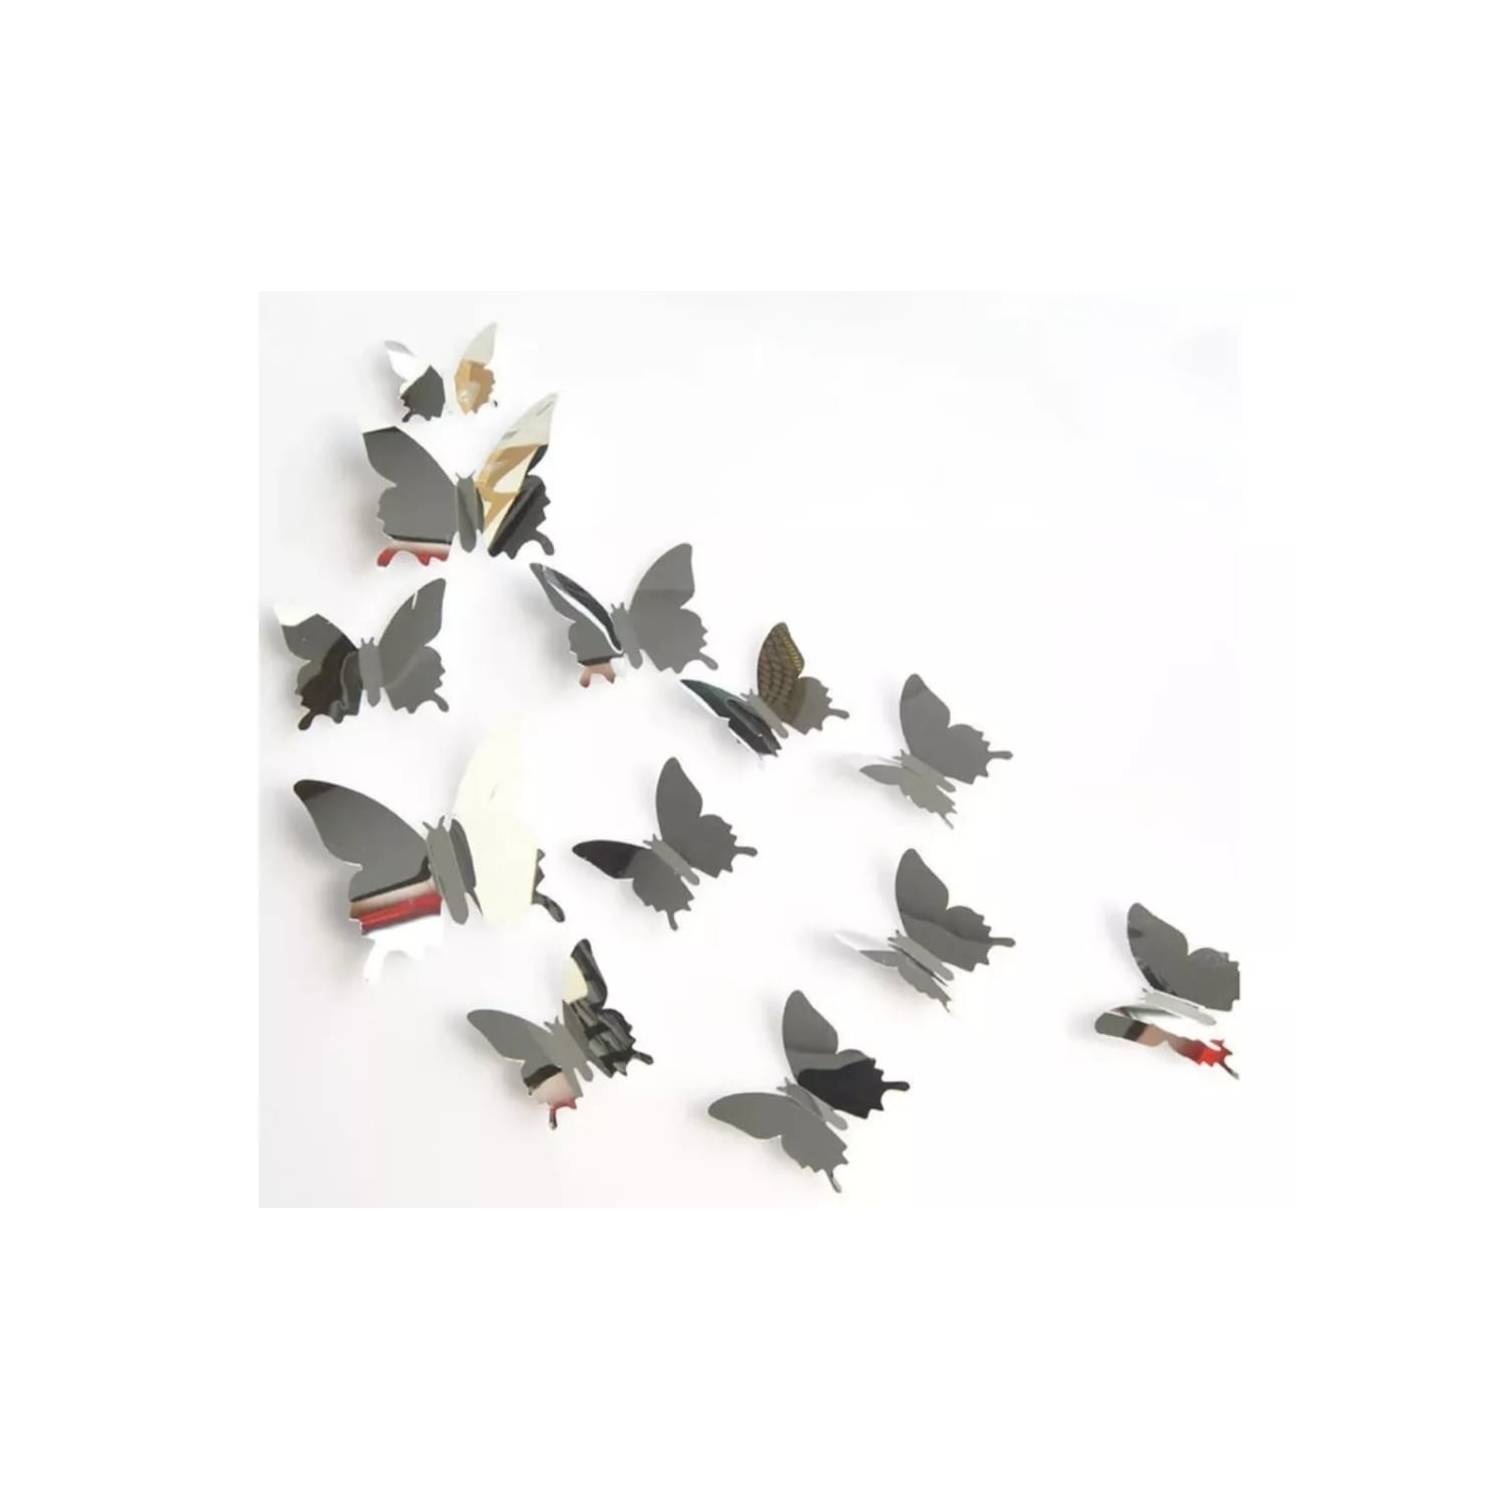 Morph Colombia - Set de Mariposas decorativas 🦋💗 Escoge